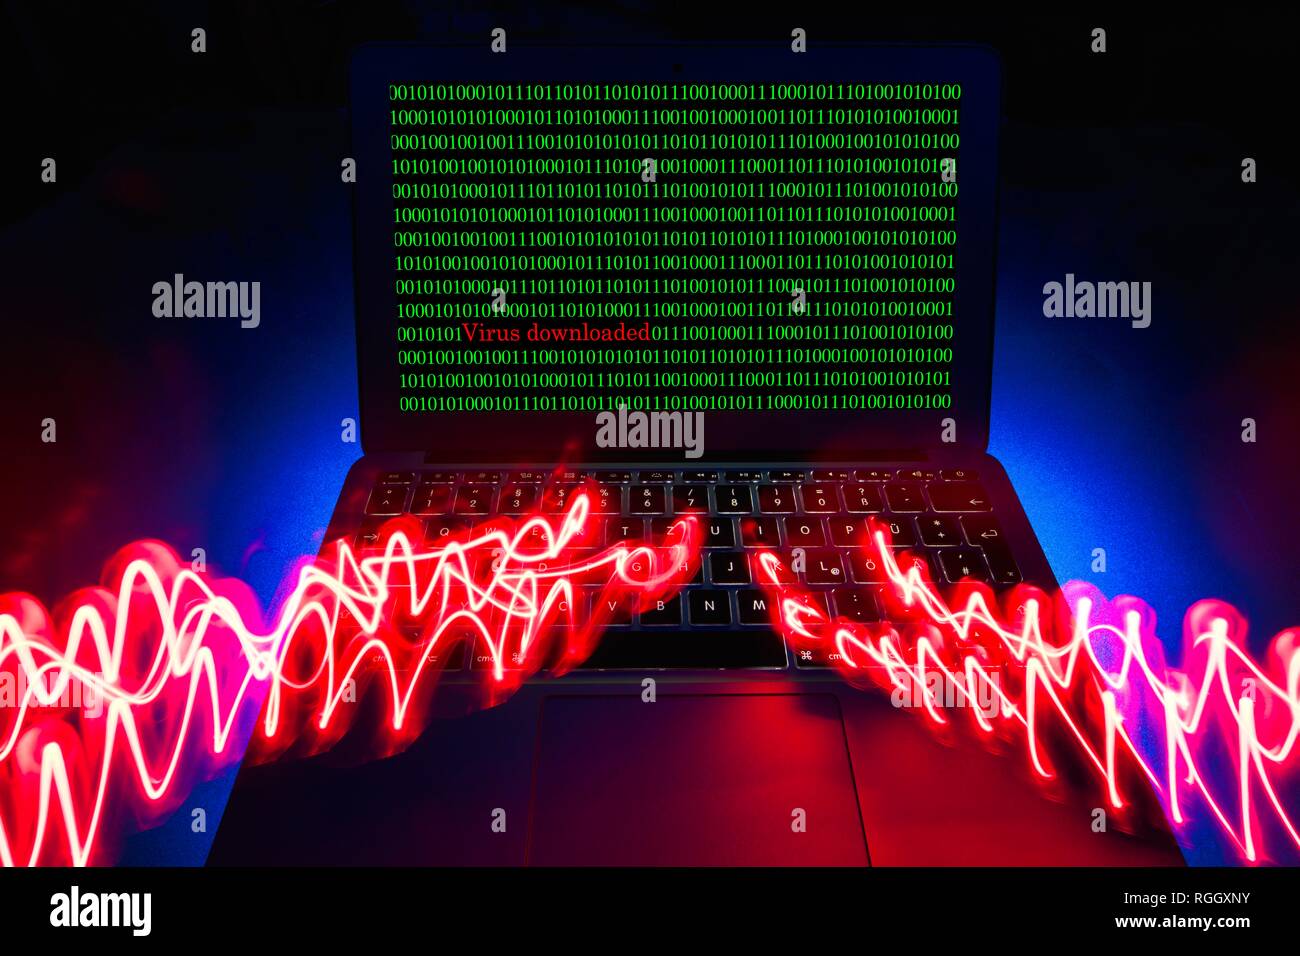 Imagen símbolo de alarma de malware, virus, delitos informáticos, protección de datos, Baden-Württemberg, Alemania Foto de stock